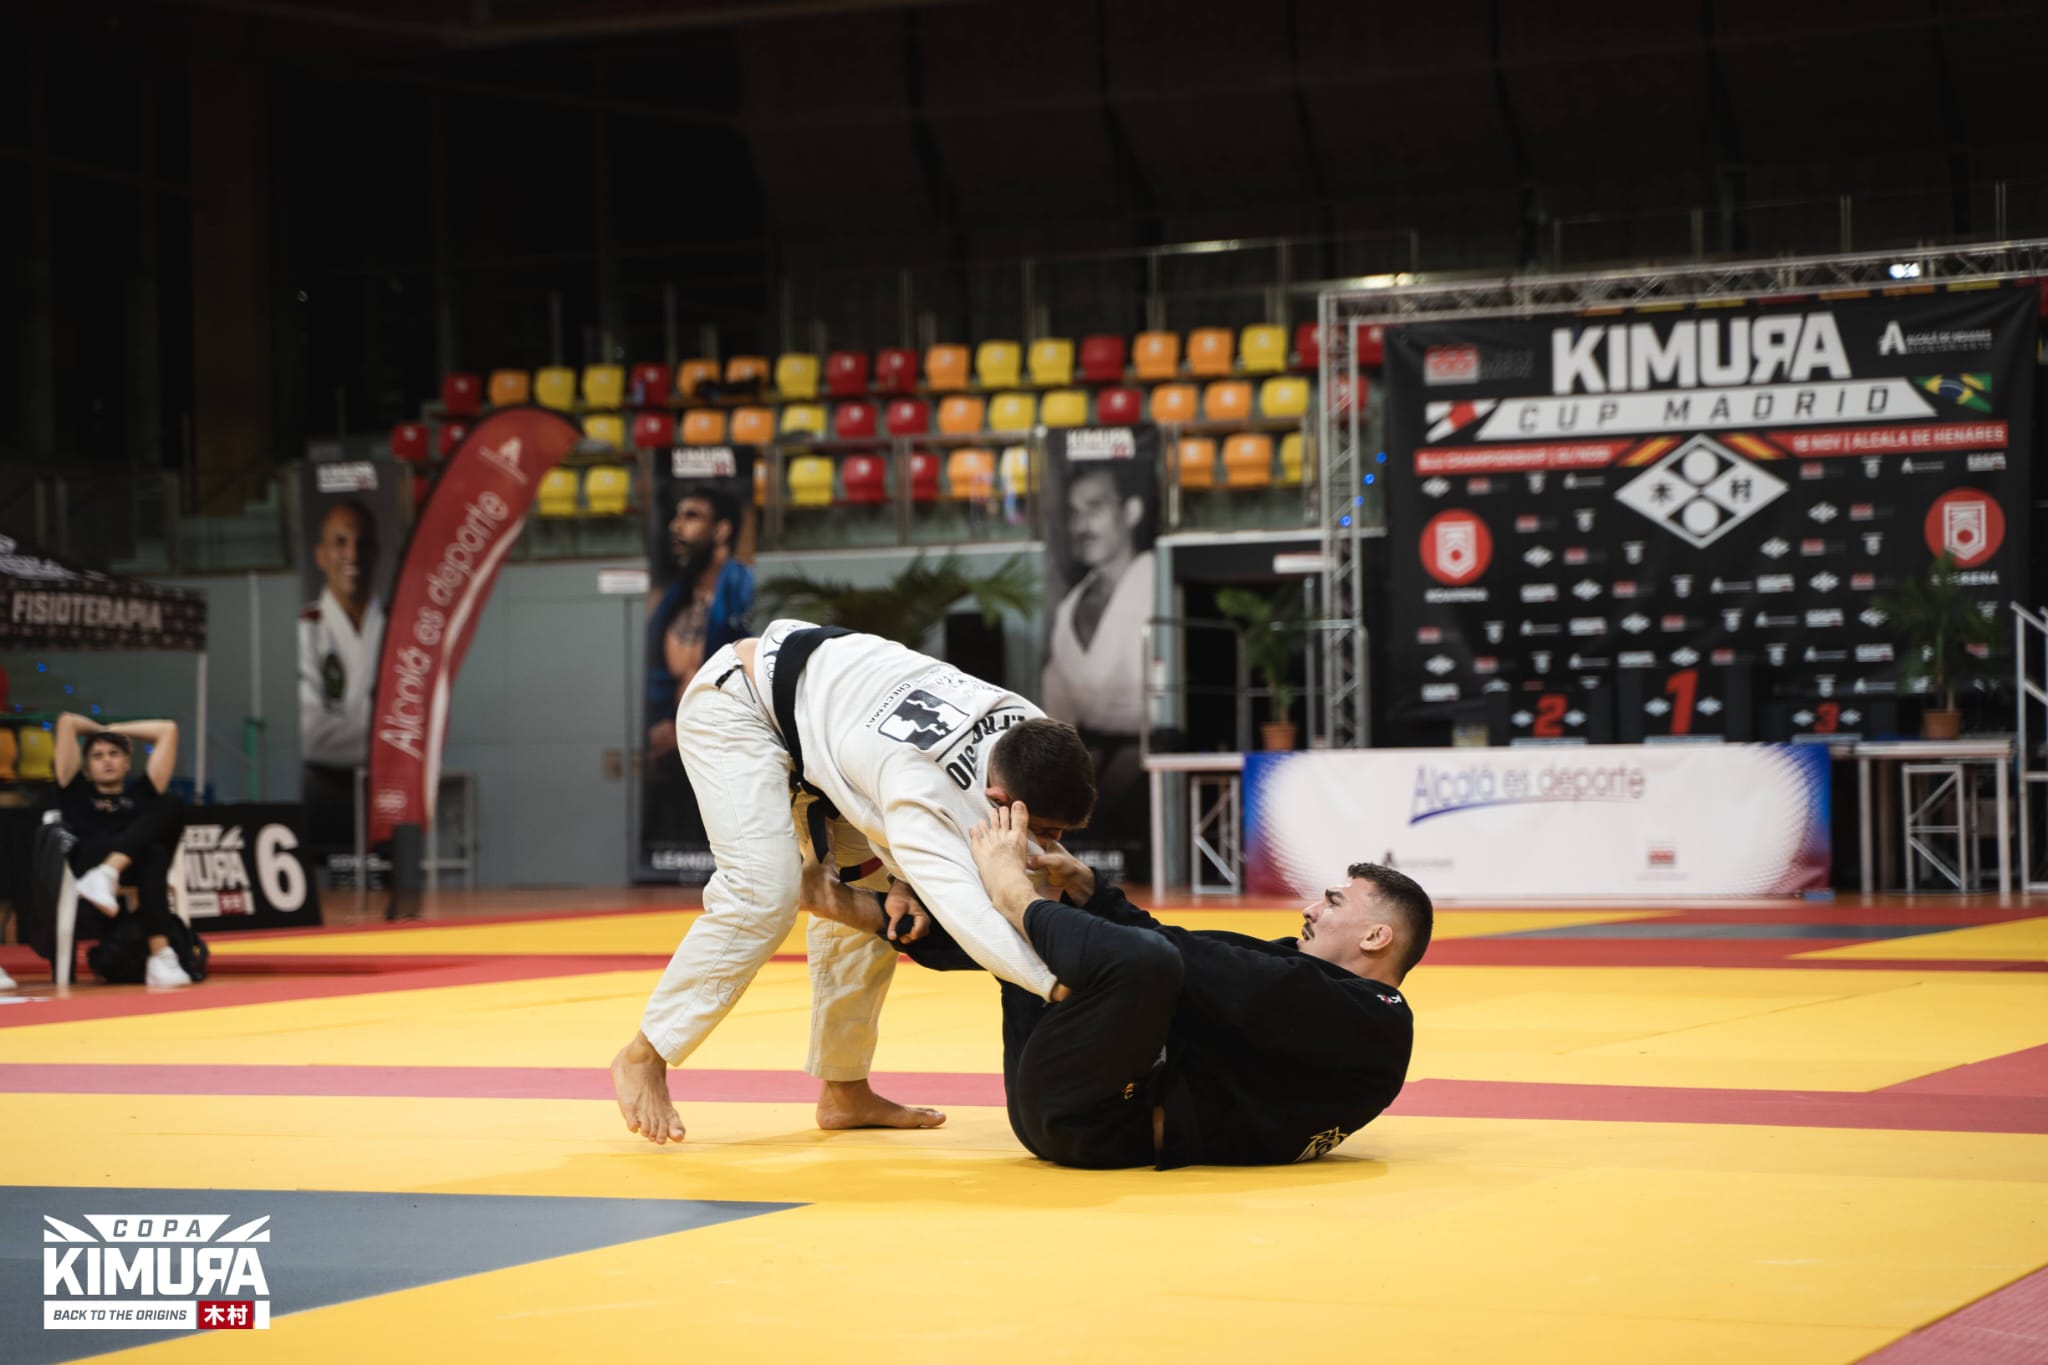 Evento de superfgiht de Kimura cup, Kimura Cup es la mejor promotora de eventos deportivos de bjj (brazilian jiu jitsu) y grappling en España y pronto en Europa